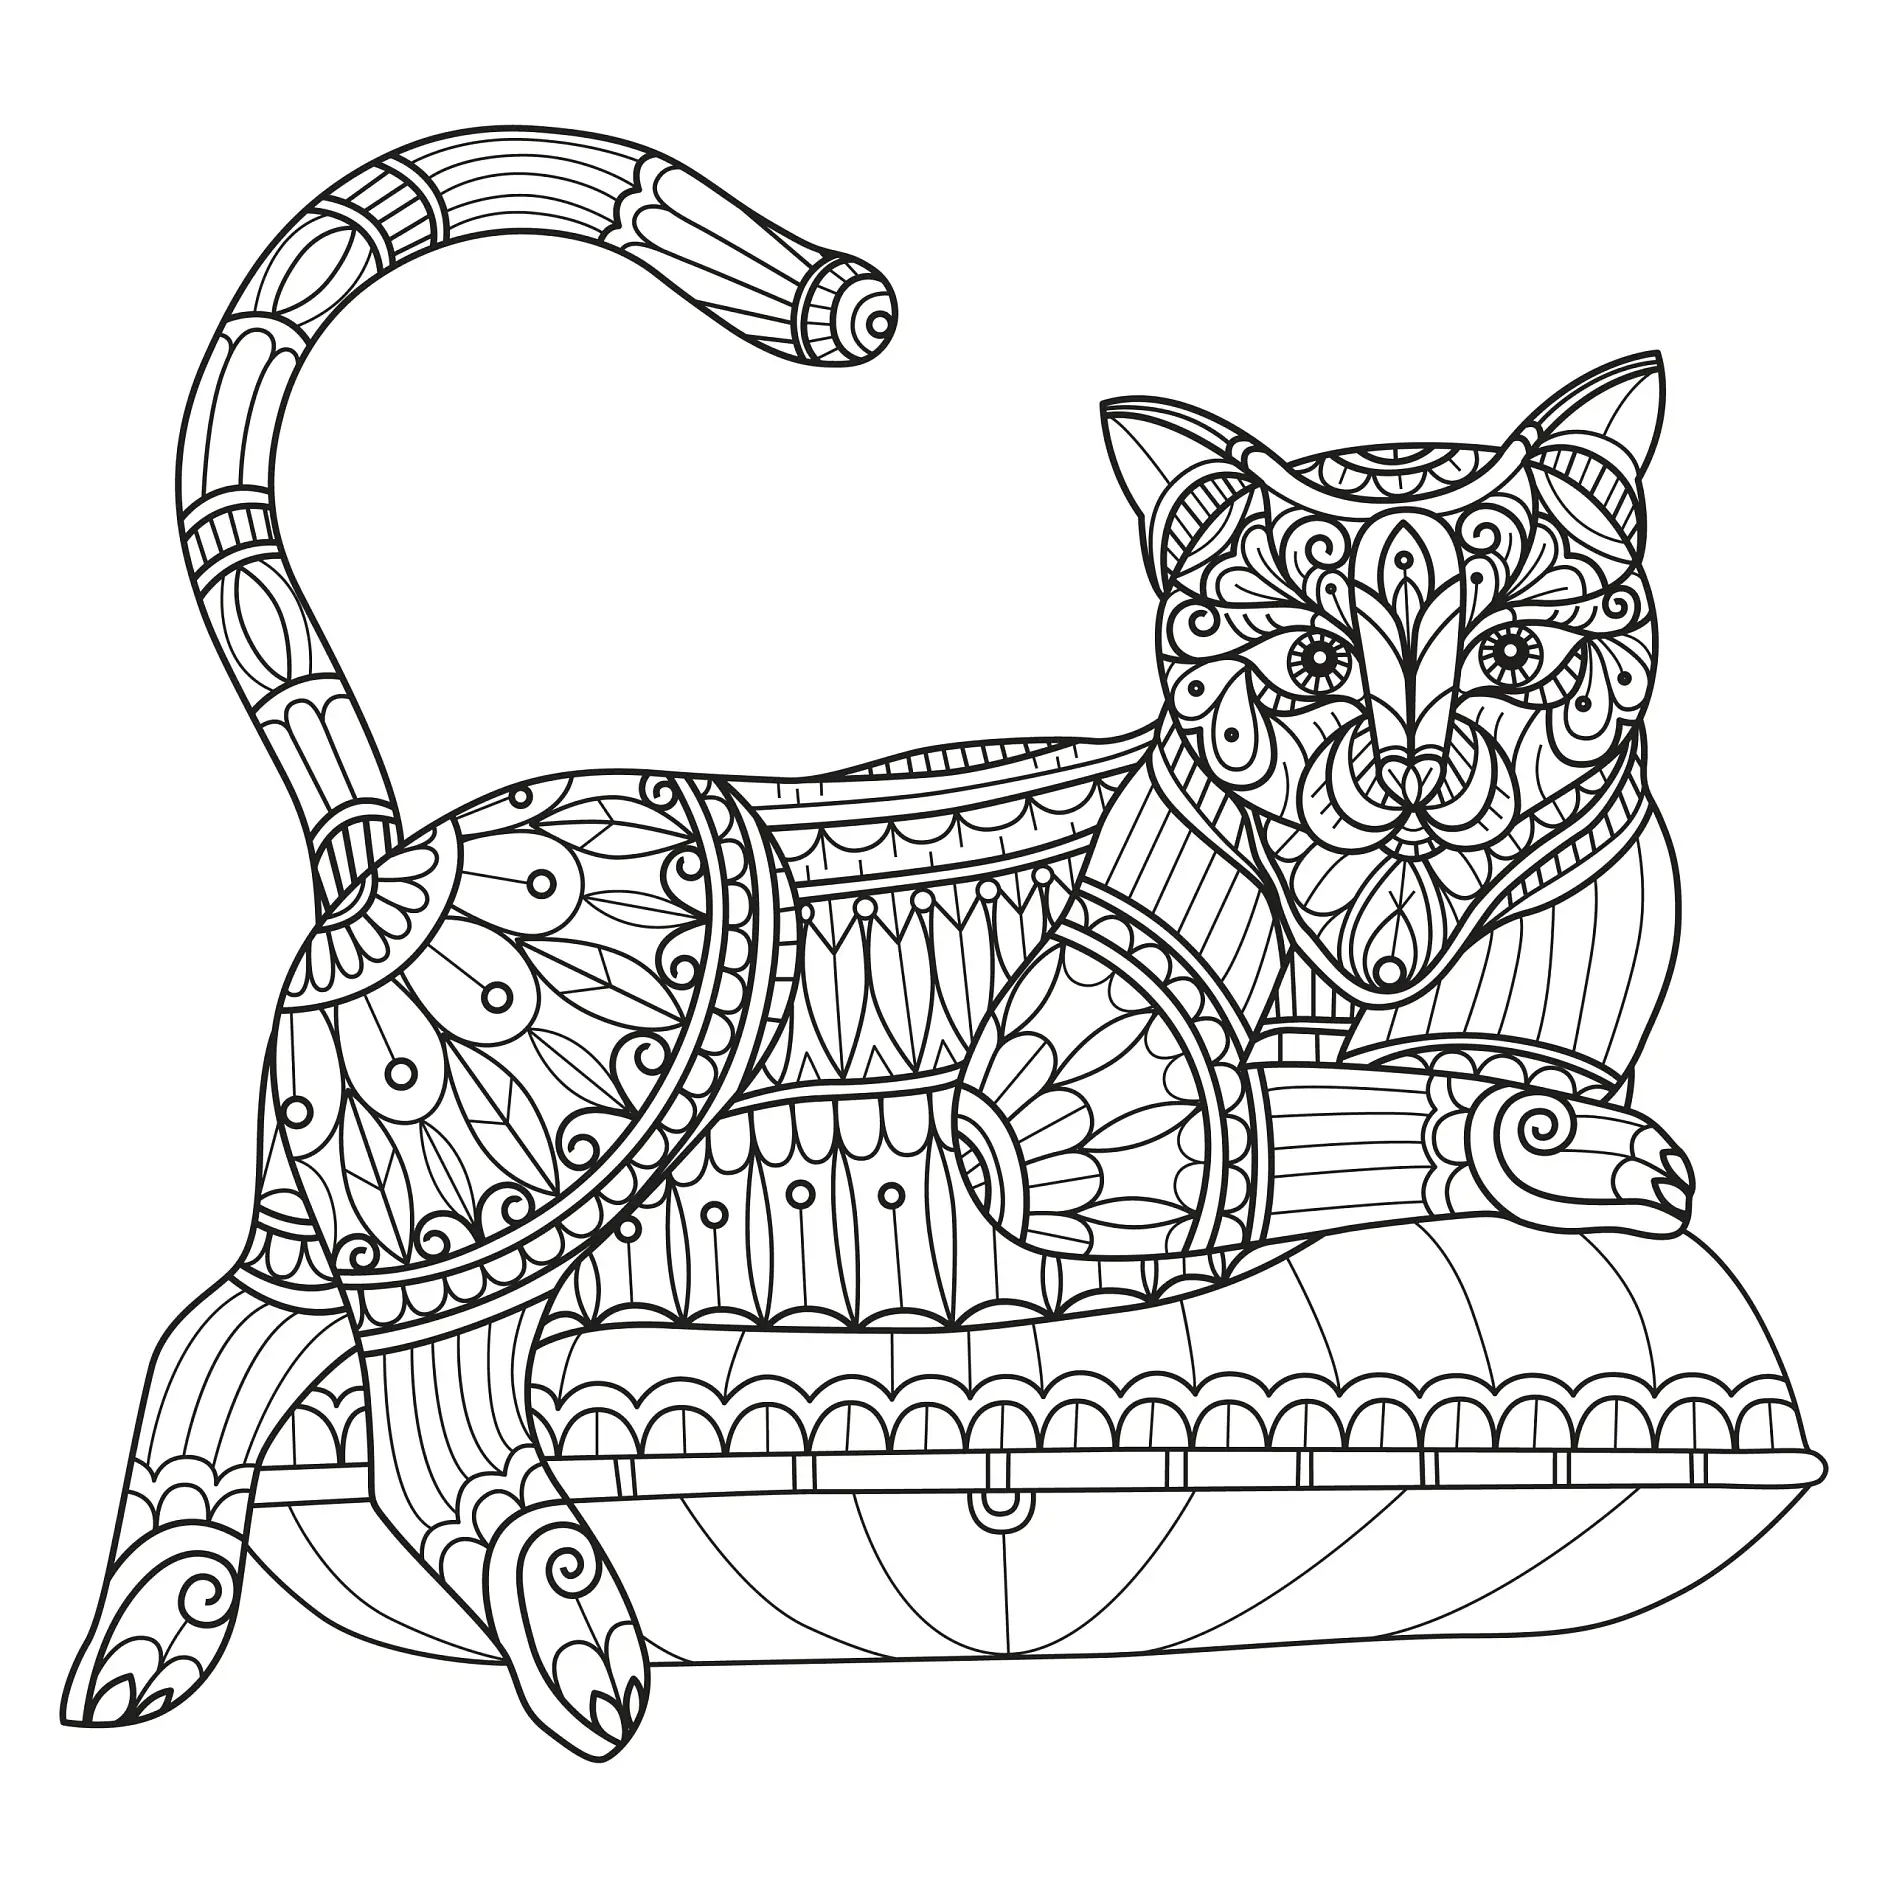 Ausmalbild Mandala mit liegender Katze und detaillierten Mustern